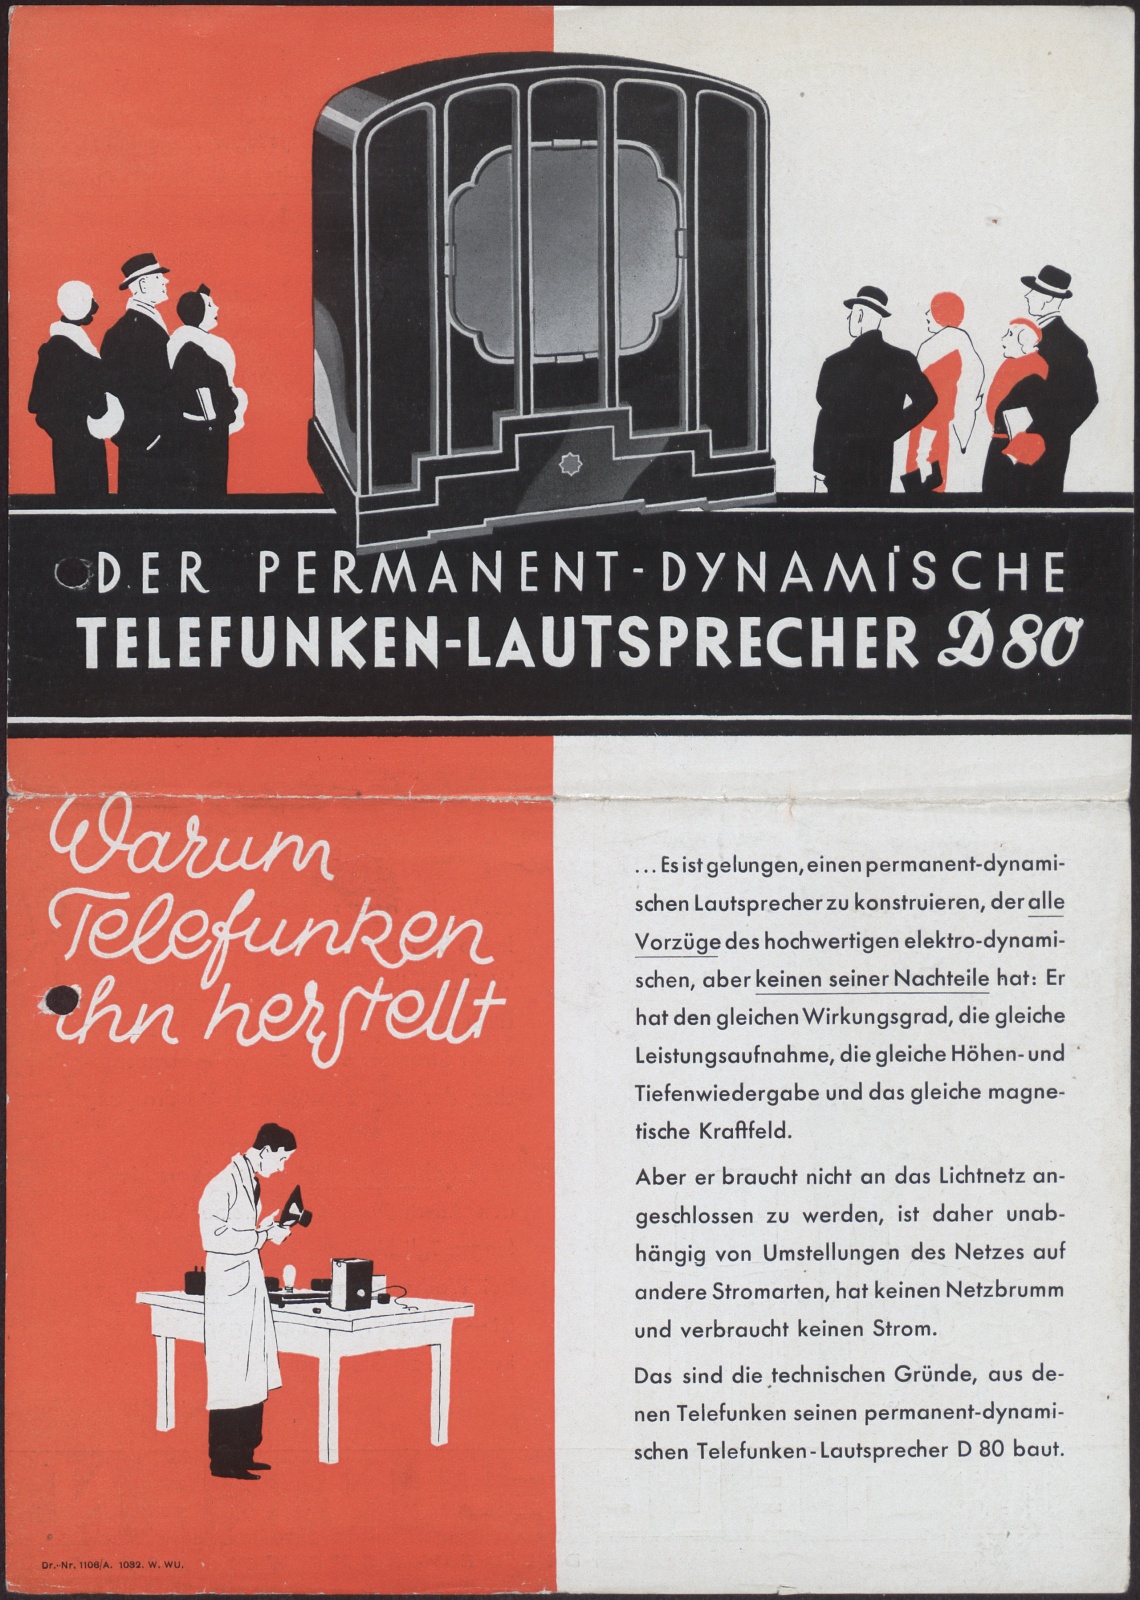 Werbeprospekt: Der Permanent - Dynamische Telefunken - Lautsprecher D 20 (Stiftung Deutsches Technikmuseum Berlin CC0)